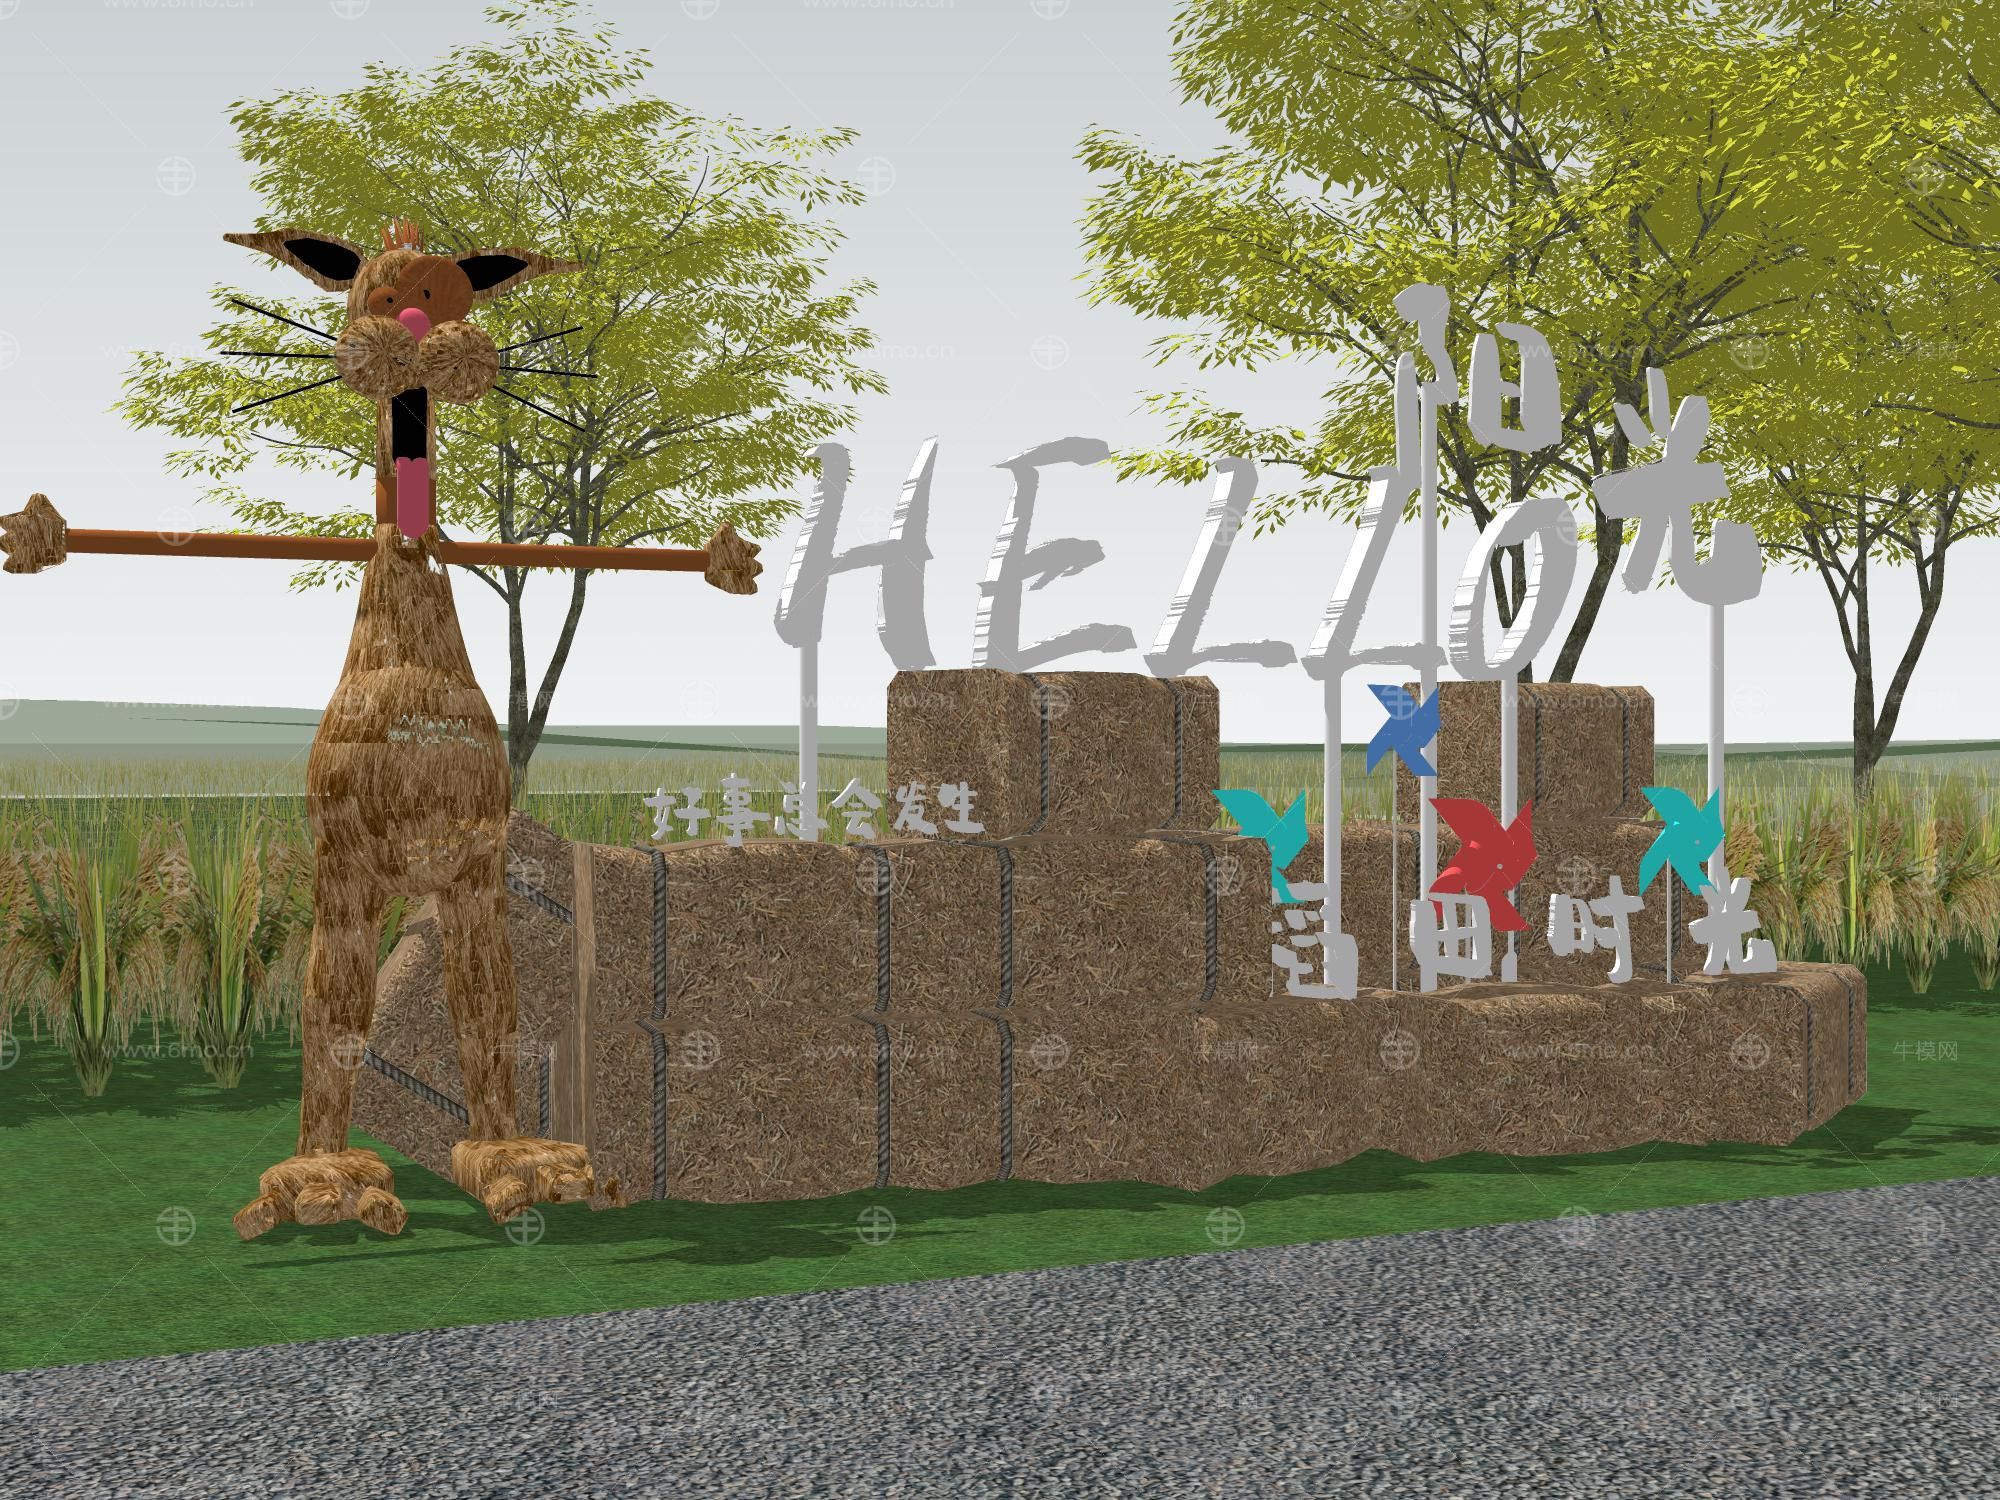 稻田露营景观草垛子干草堆设备风车宣传栏动物雕塑户外露营聚会水稻景观树植物